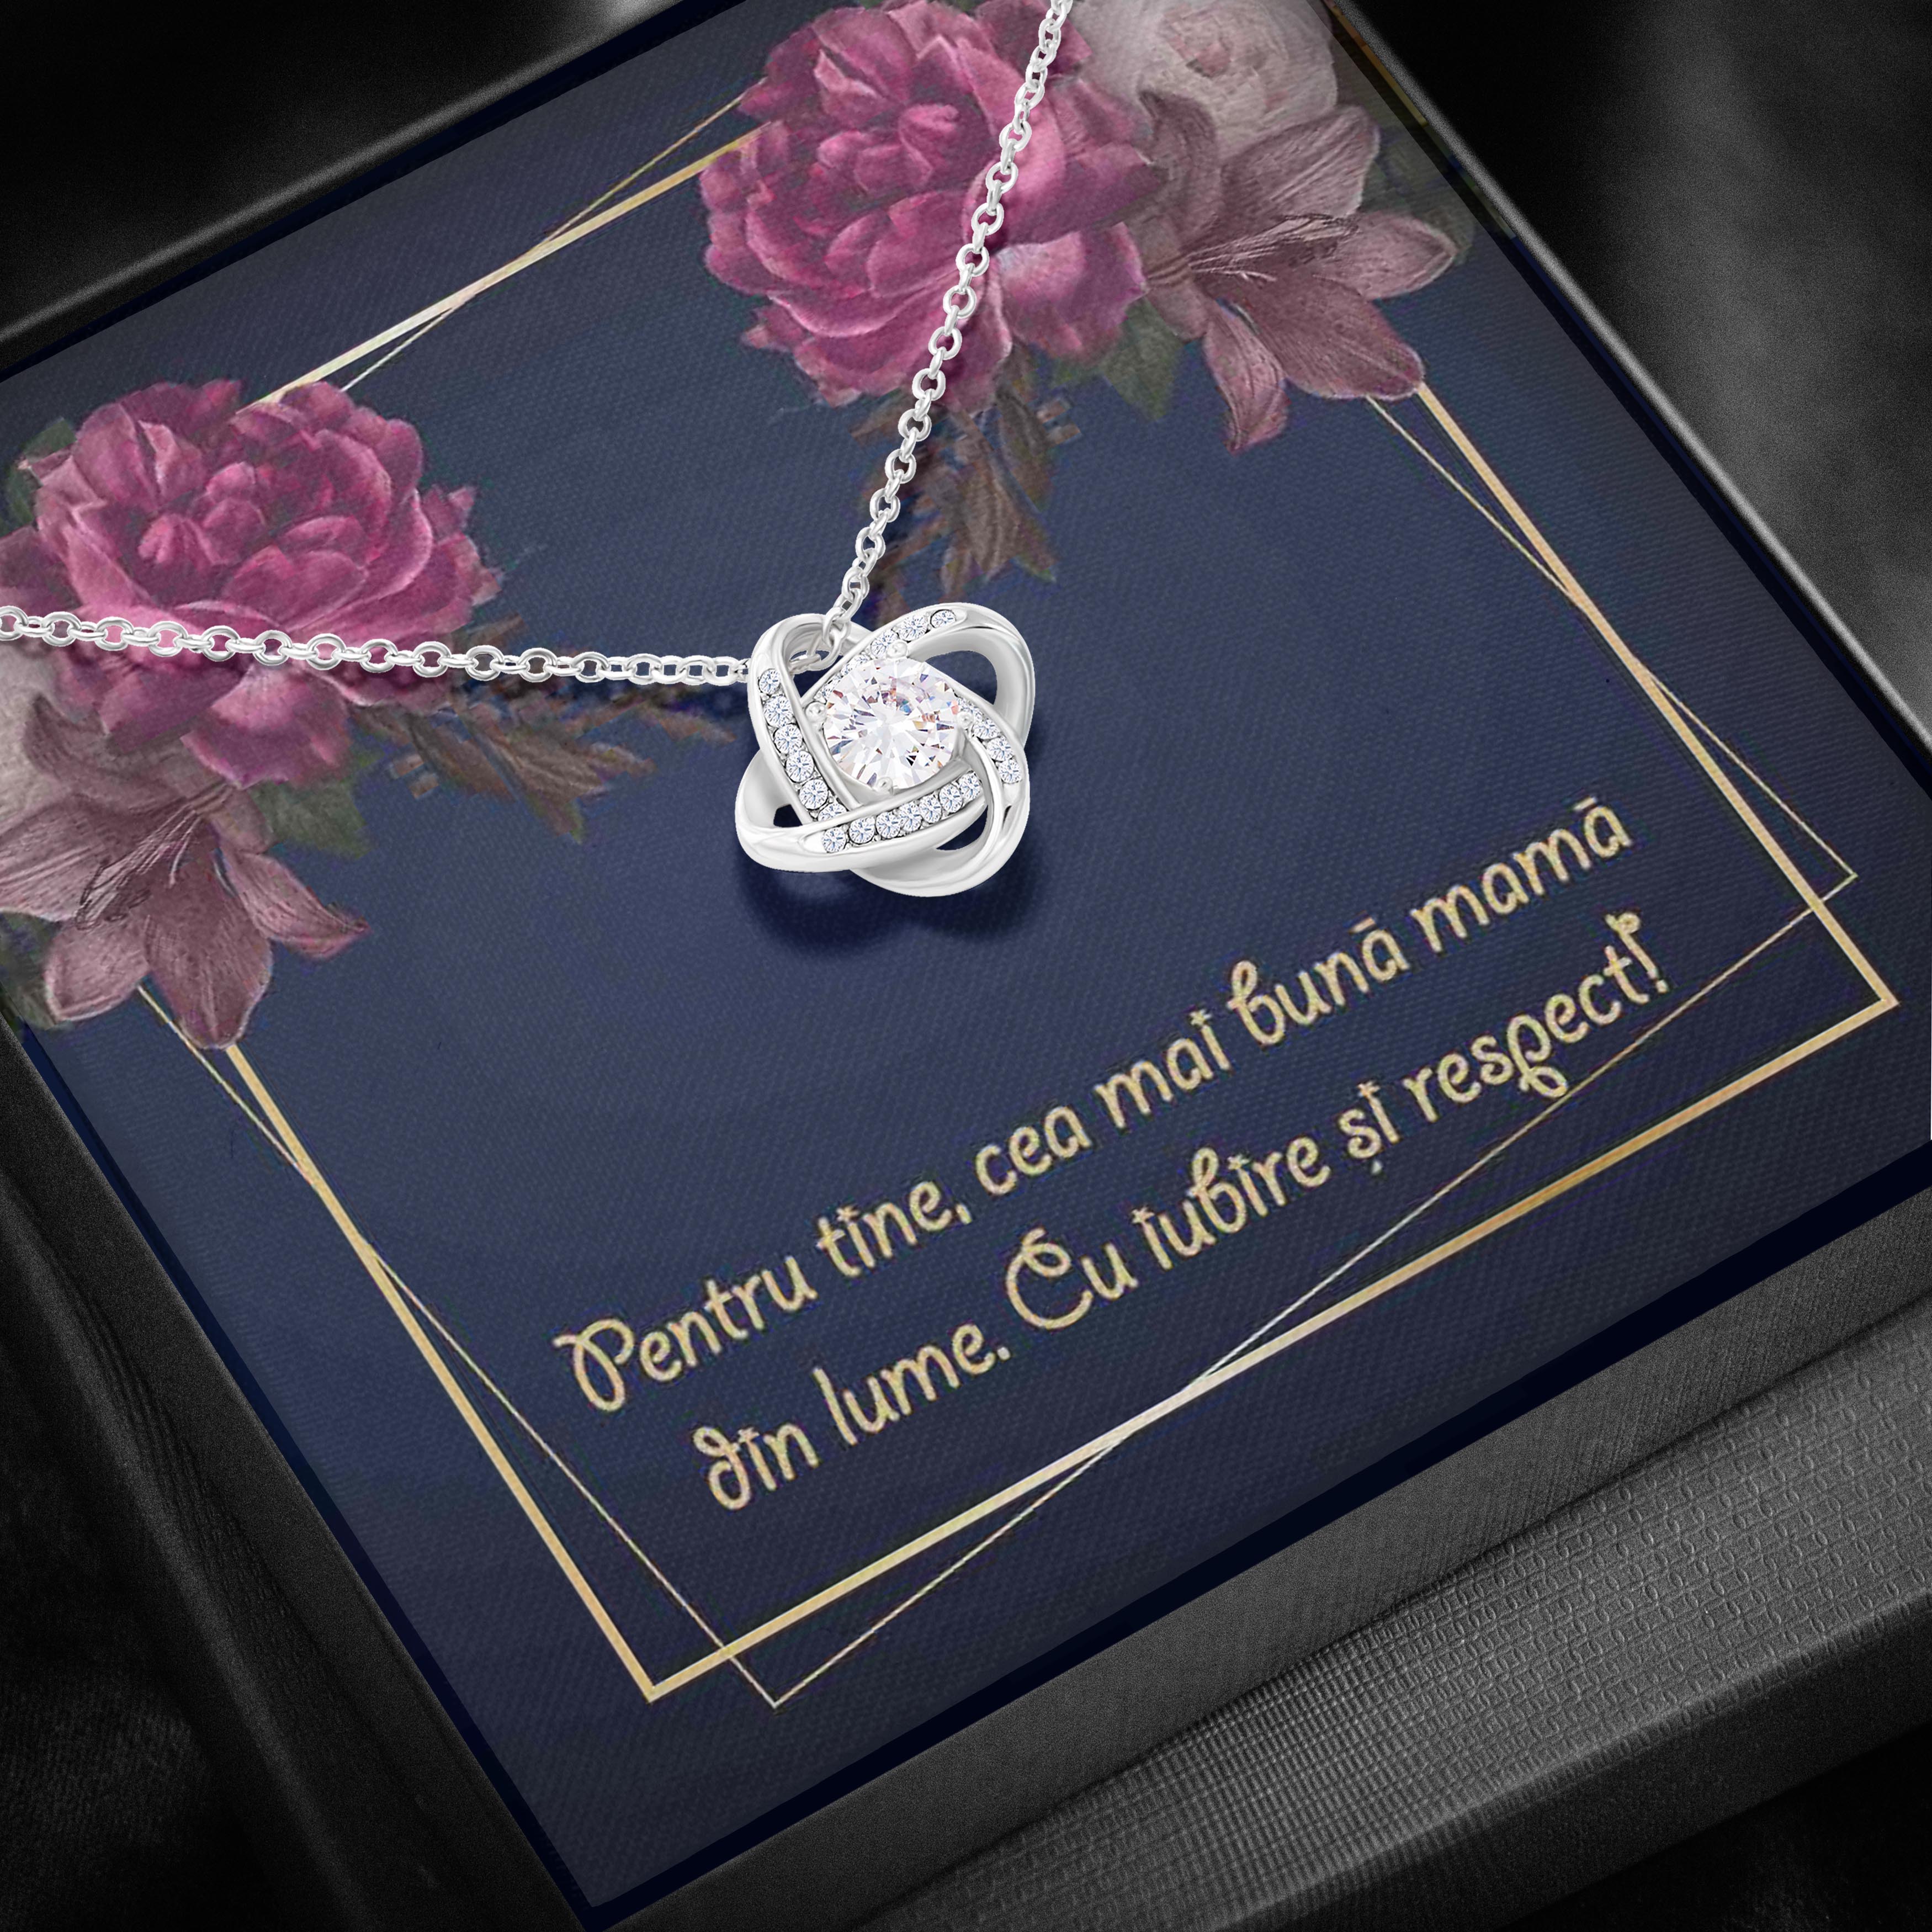 Colier Cu Pandant Nod Placat Cu Aur Alb si Aur Rose, Cadou Pentru Mama, Card Personalizat "Pentru tine, cea mai buna mama din lume"